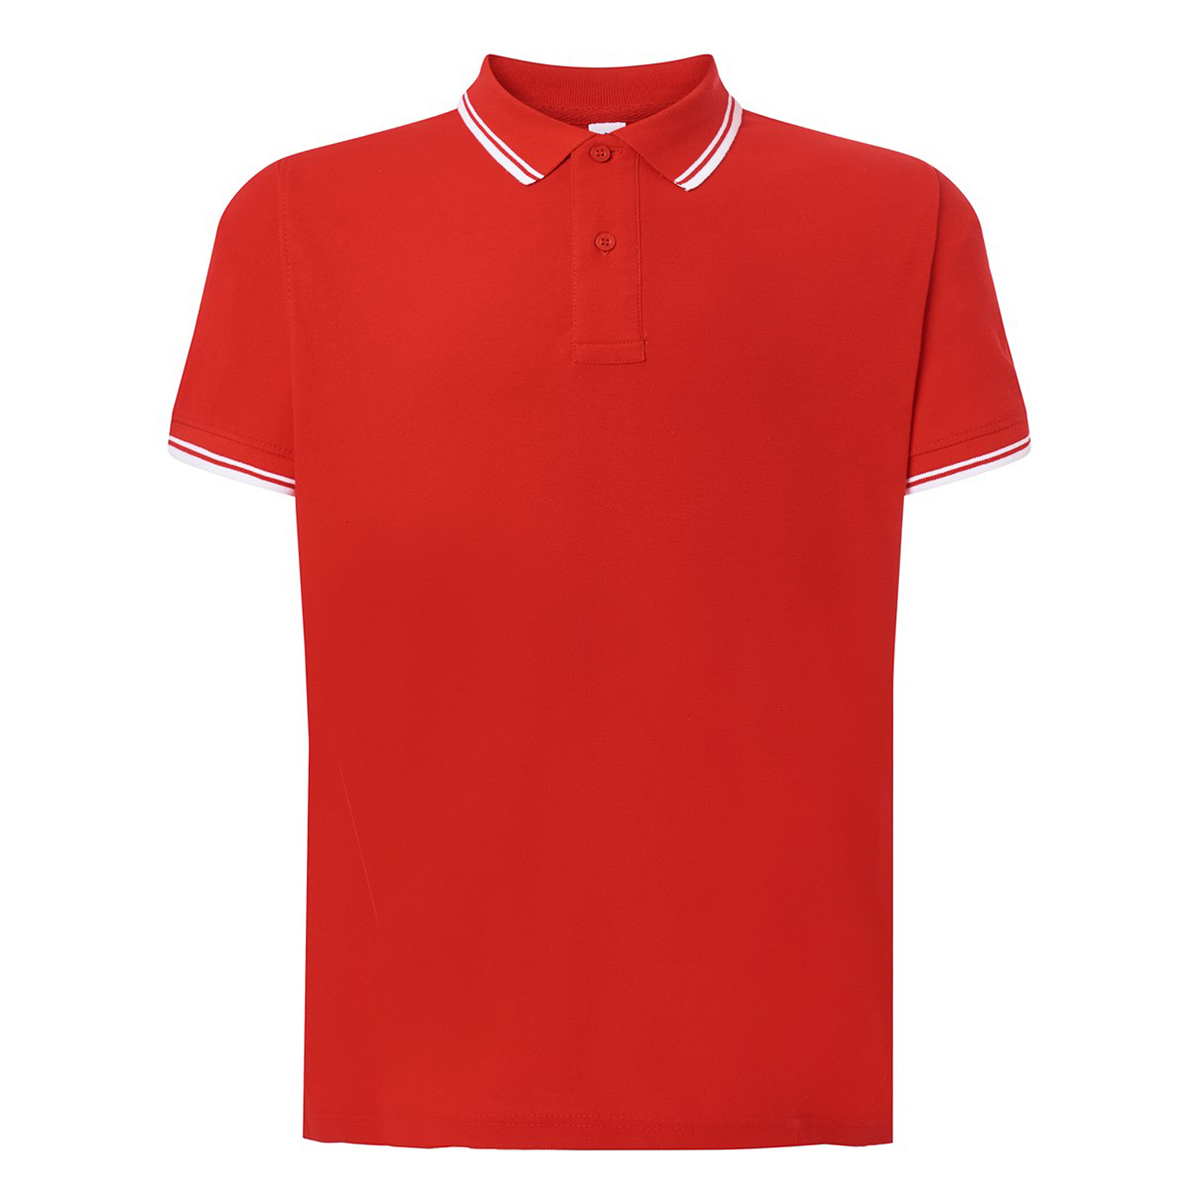 Koszulka polo męska JHK Contrast czerwono-biały